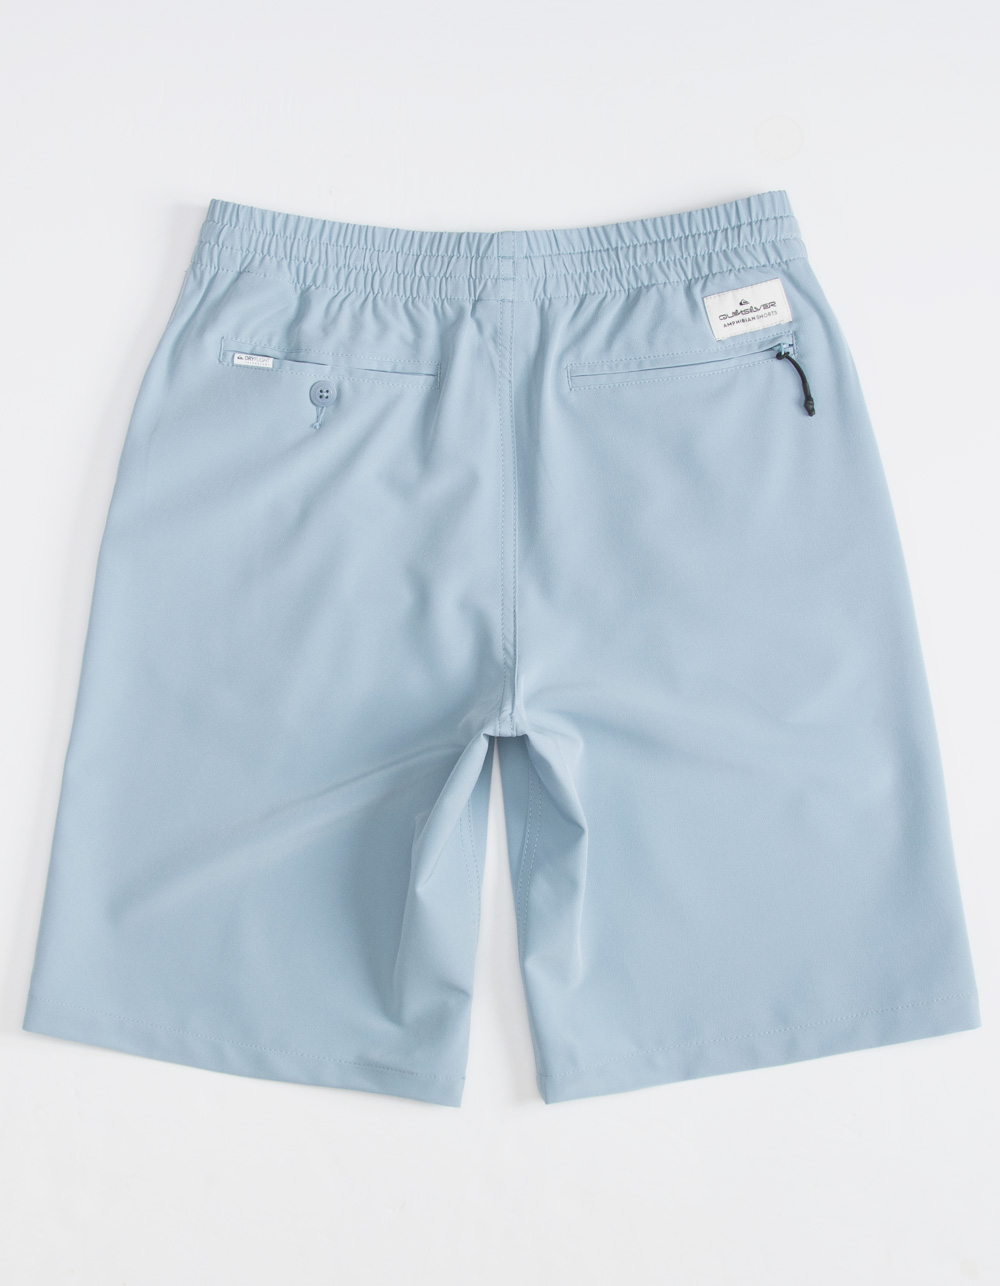 QUIKSILVER Ocean Hybrid Boys Volley Shorts - LIGHT BLUE | Tillys